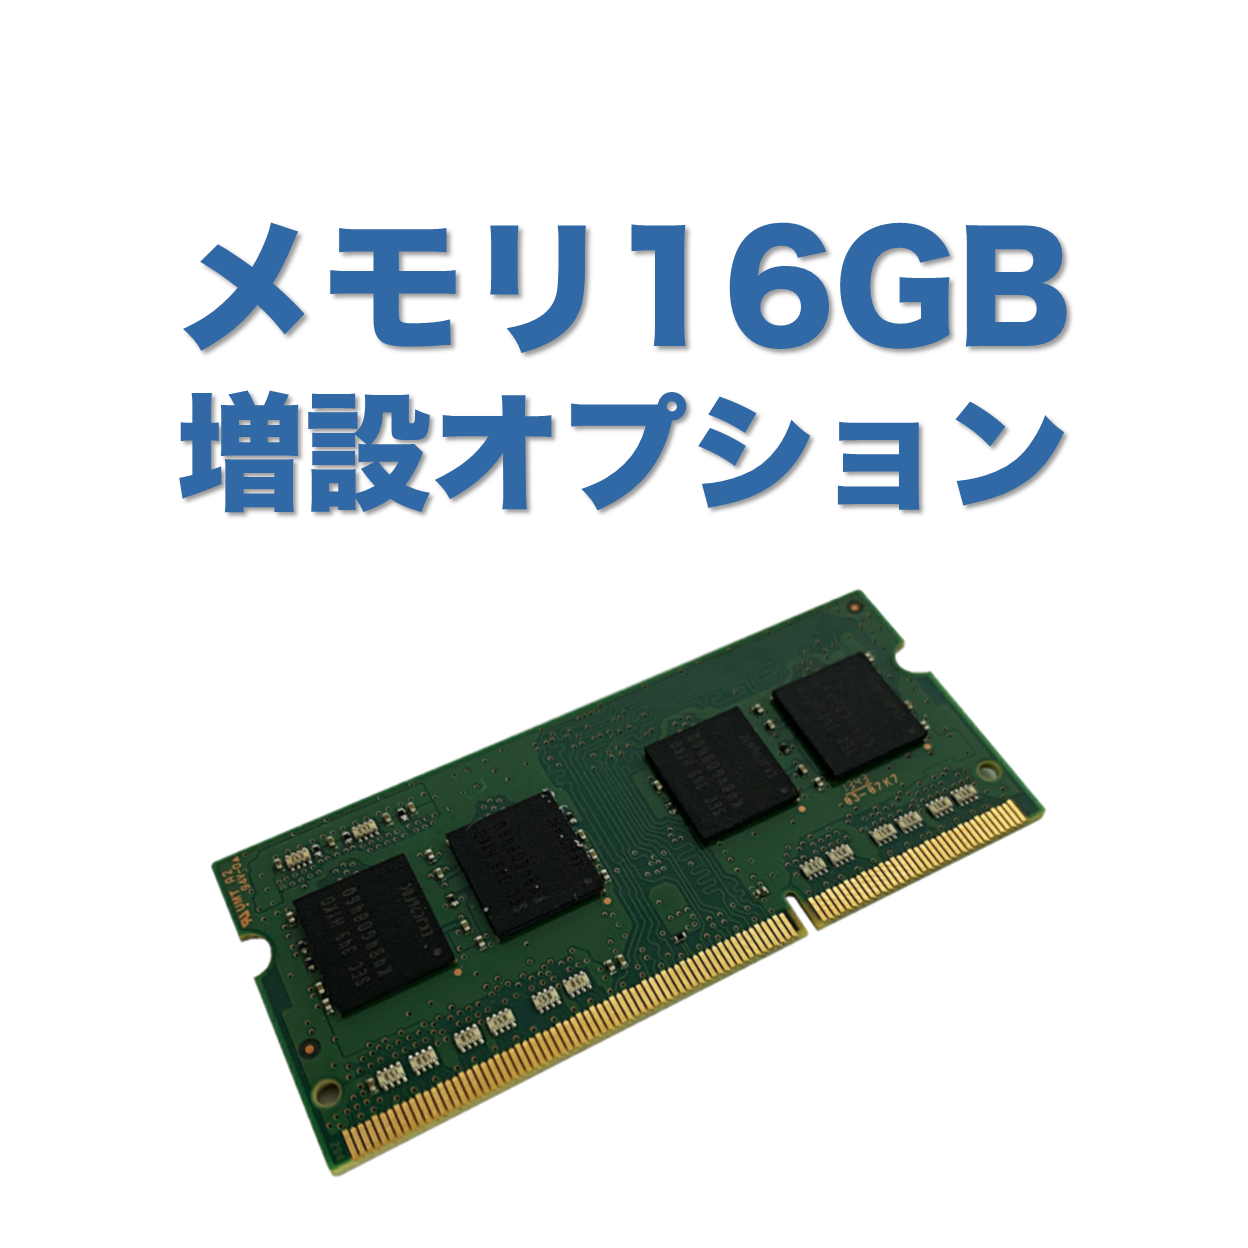 【メモリ8GBからメモリ16GBへ増設】